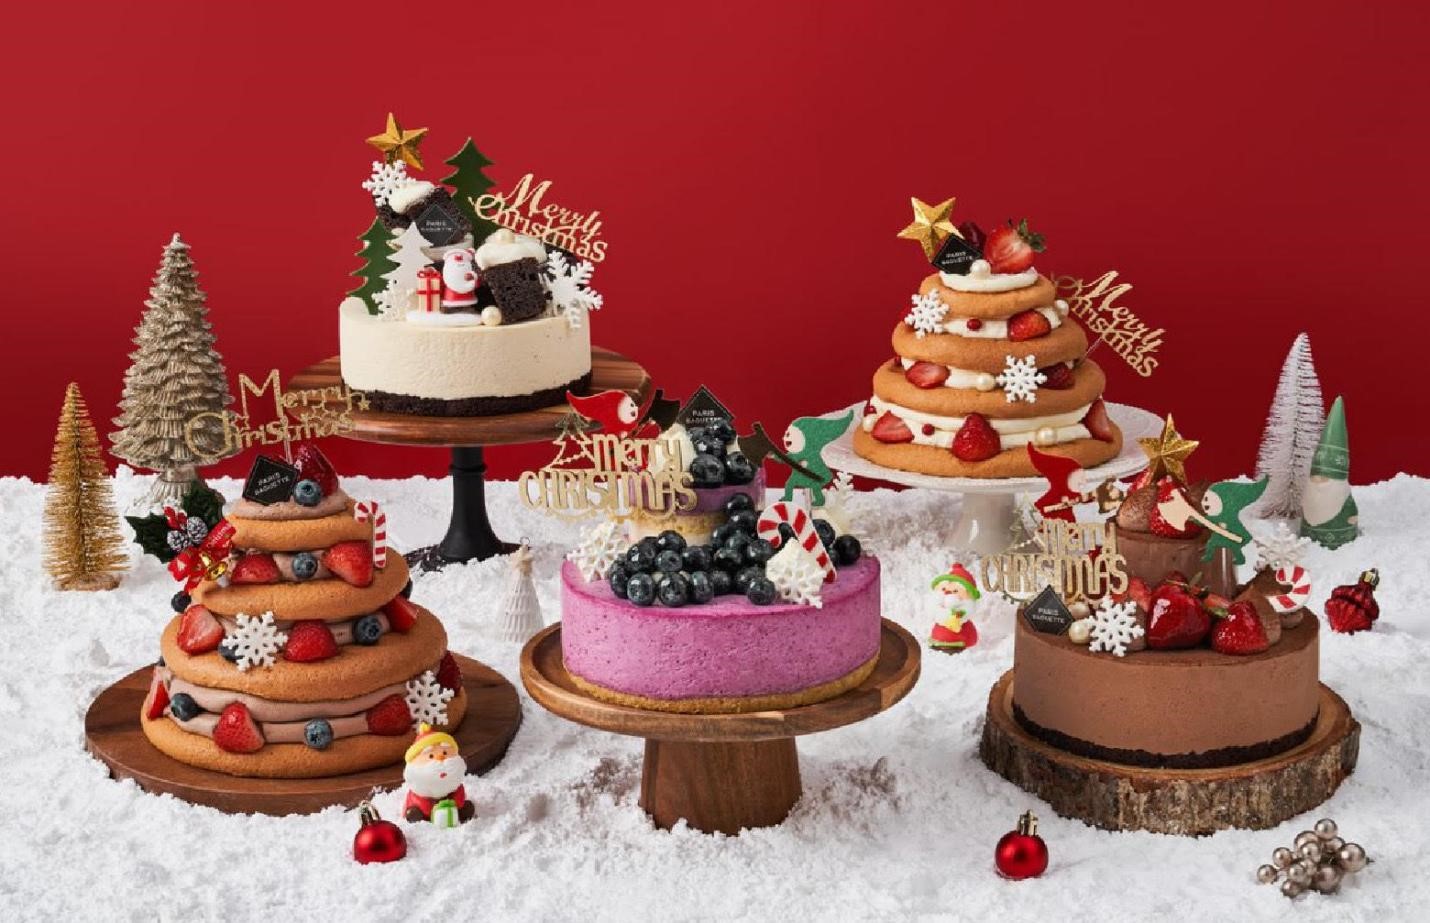 Những hình ảnh món bánh giáng sinh ngon lành và đầy màu sắc sẽ khiến bạn đói bụng và muốn ăn ngay lập tức. Tìm hiểu cách làm những món bánh Noel đặc biệt và tìm được nhiều cách trang trí bánh đầy sáng tạo.